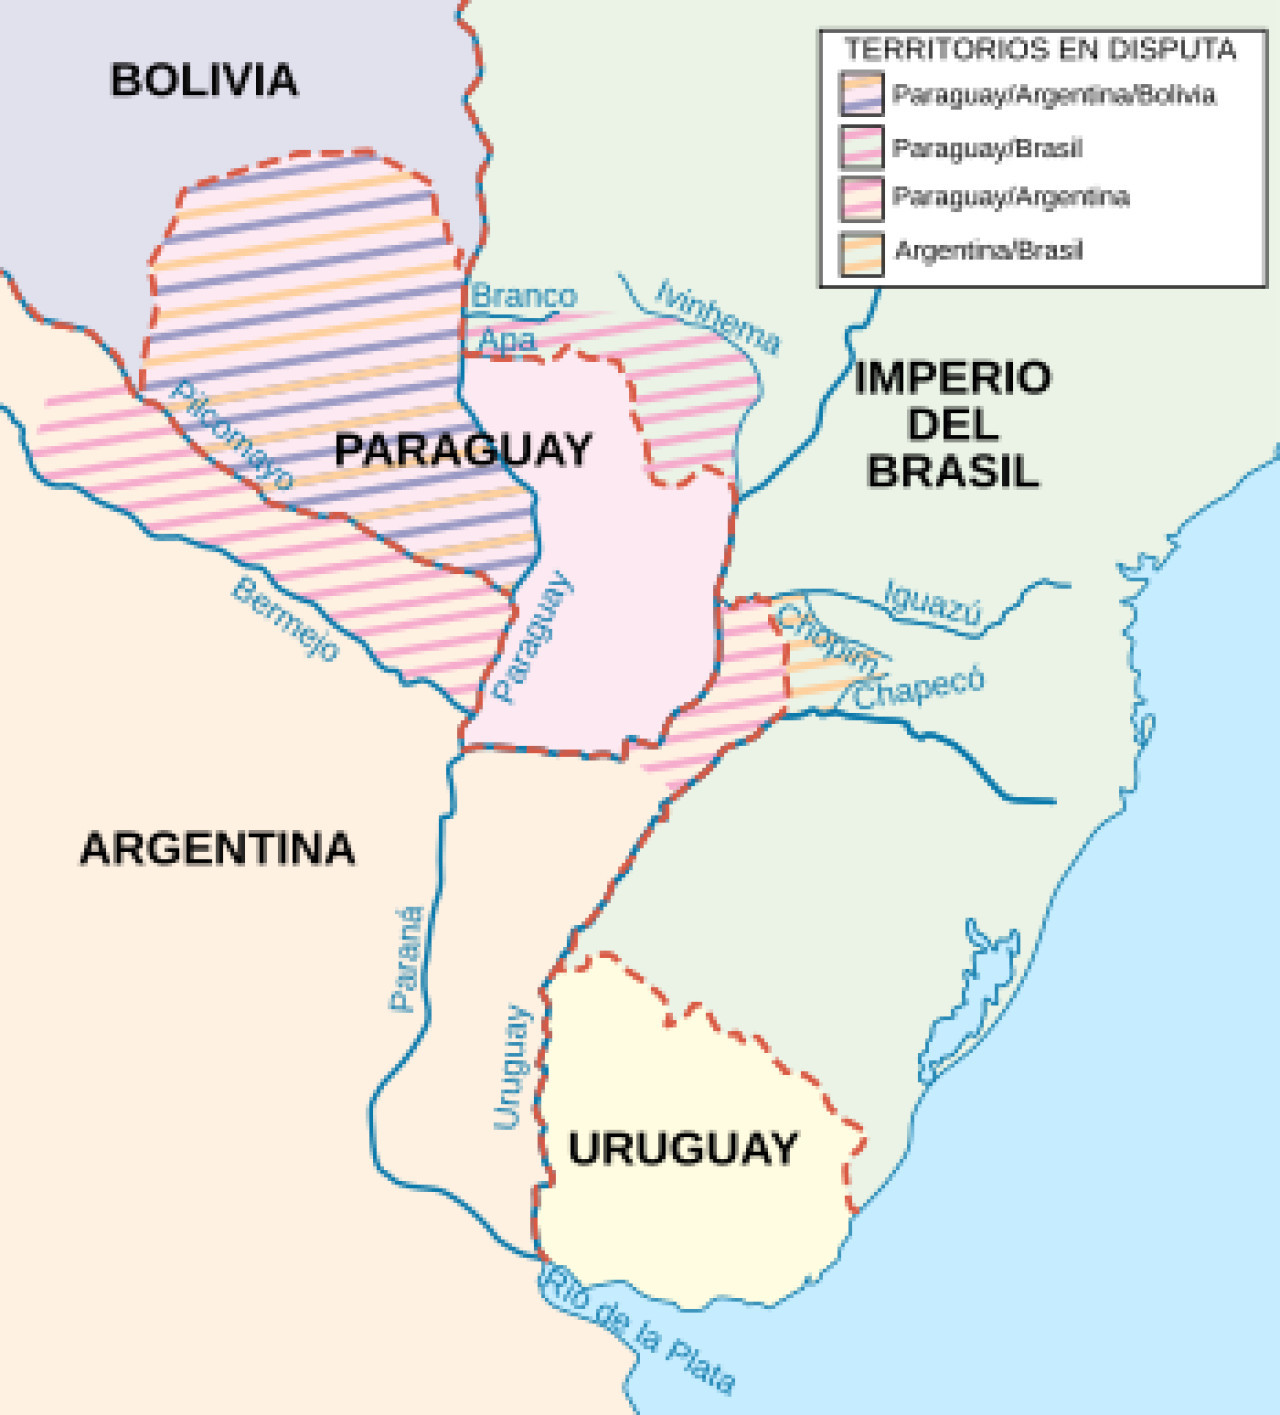 Territorio de Paraguay en disputa durante la Guerra de la Triple Alianza. Foto: Gentileza Wikipedia.